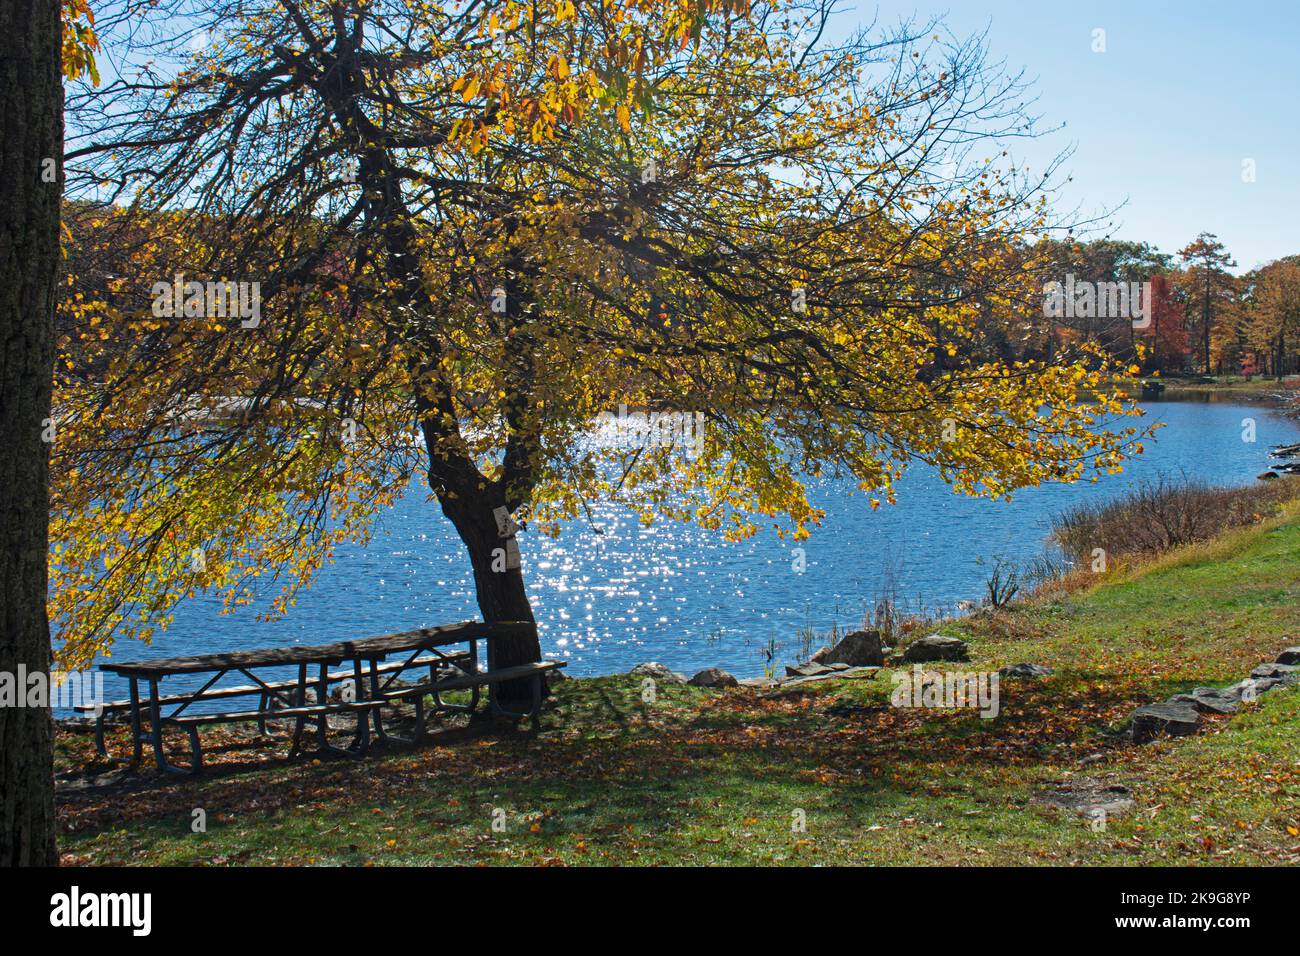 Le lac Marcia du parc national de High point du New Jersey, lors d'une journée d'automne ensoleillée, entouré d'une végétation luxuriante -08 Banque D'Images